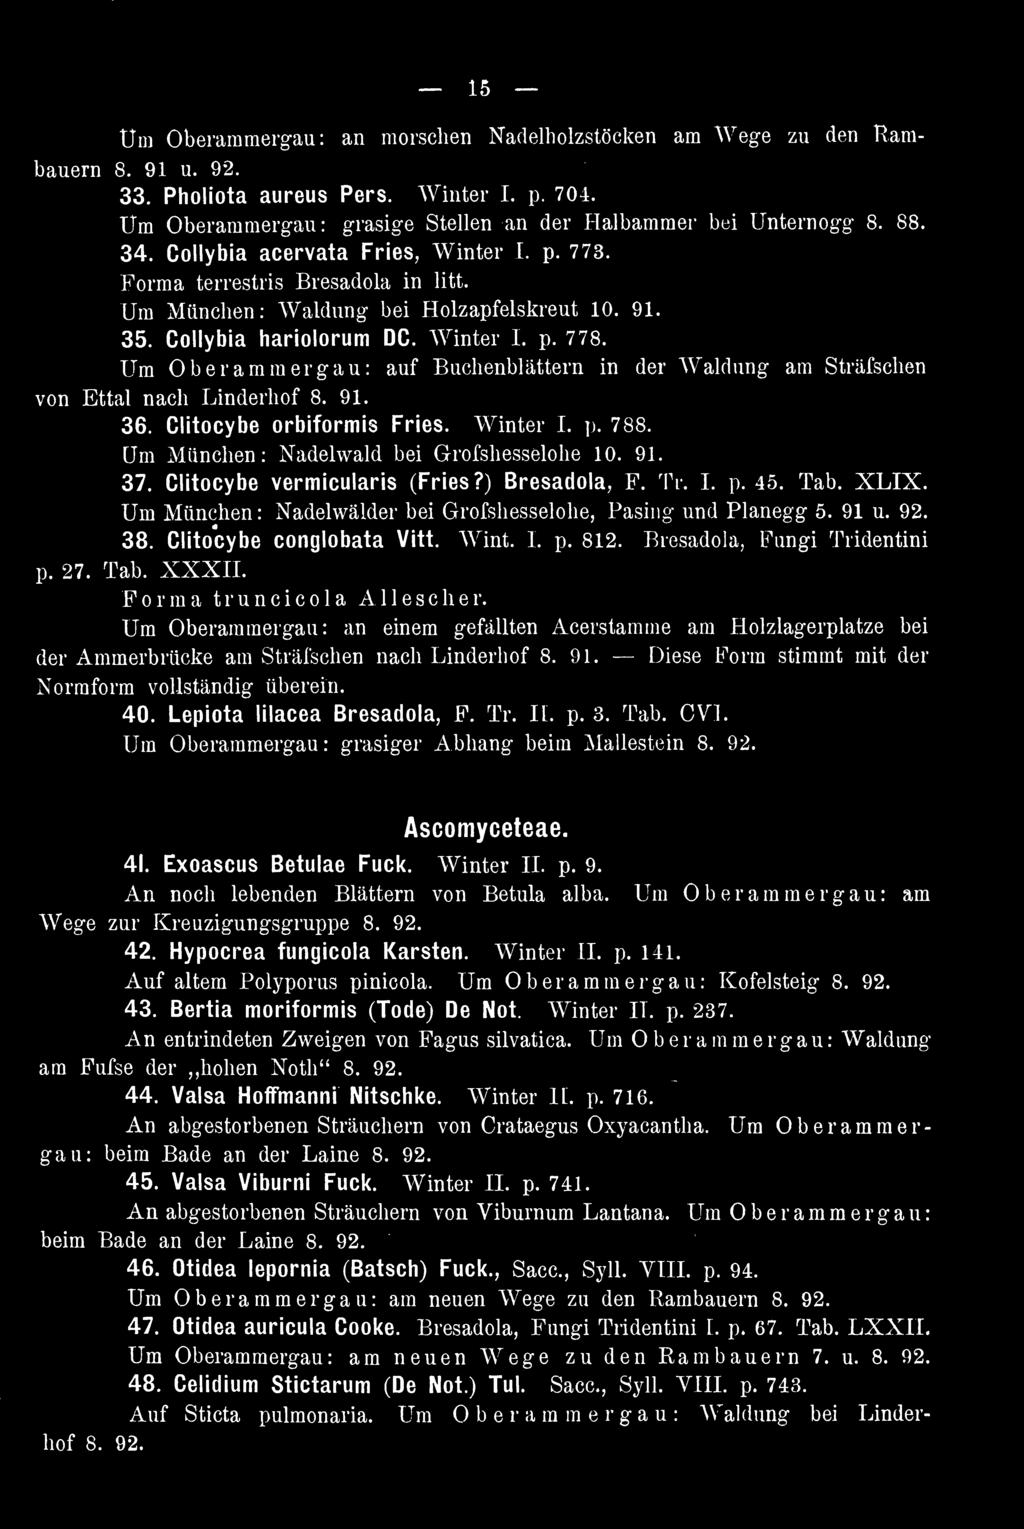 Bresadola, Fungi Tridentini p. 27. Tab. XXXII. Forma truncicola Allescher. Um Oberamraergau: an einem gefällten Acerstamme am Holzlagerplatze bei der Ammerbrücke am Sträfschen nach Linderhof 8. 91.